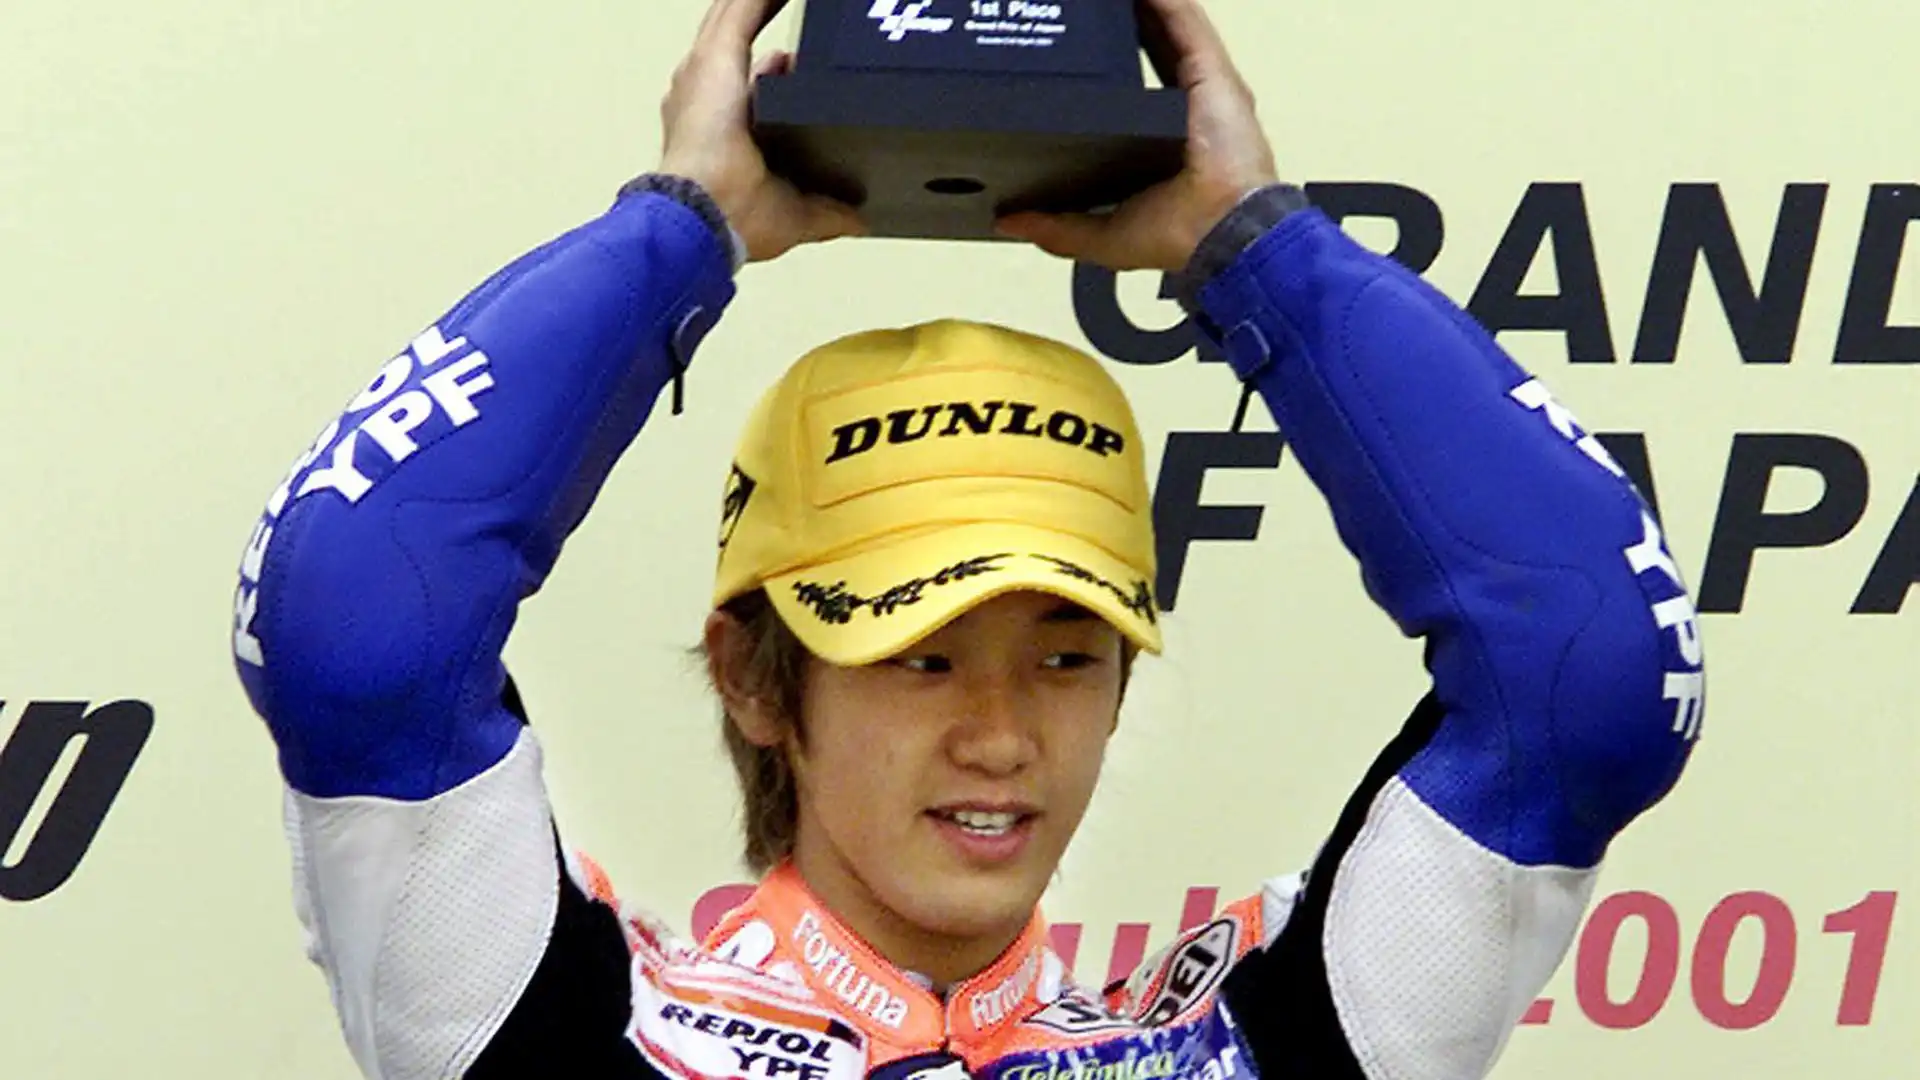 Daijiro Kato: vinse il Mondiale 2001 della classe 250 con la Honda. Morto dopo un incidente durante il Gp del Giappone